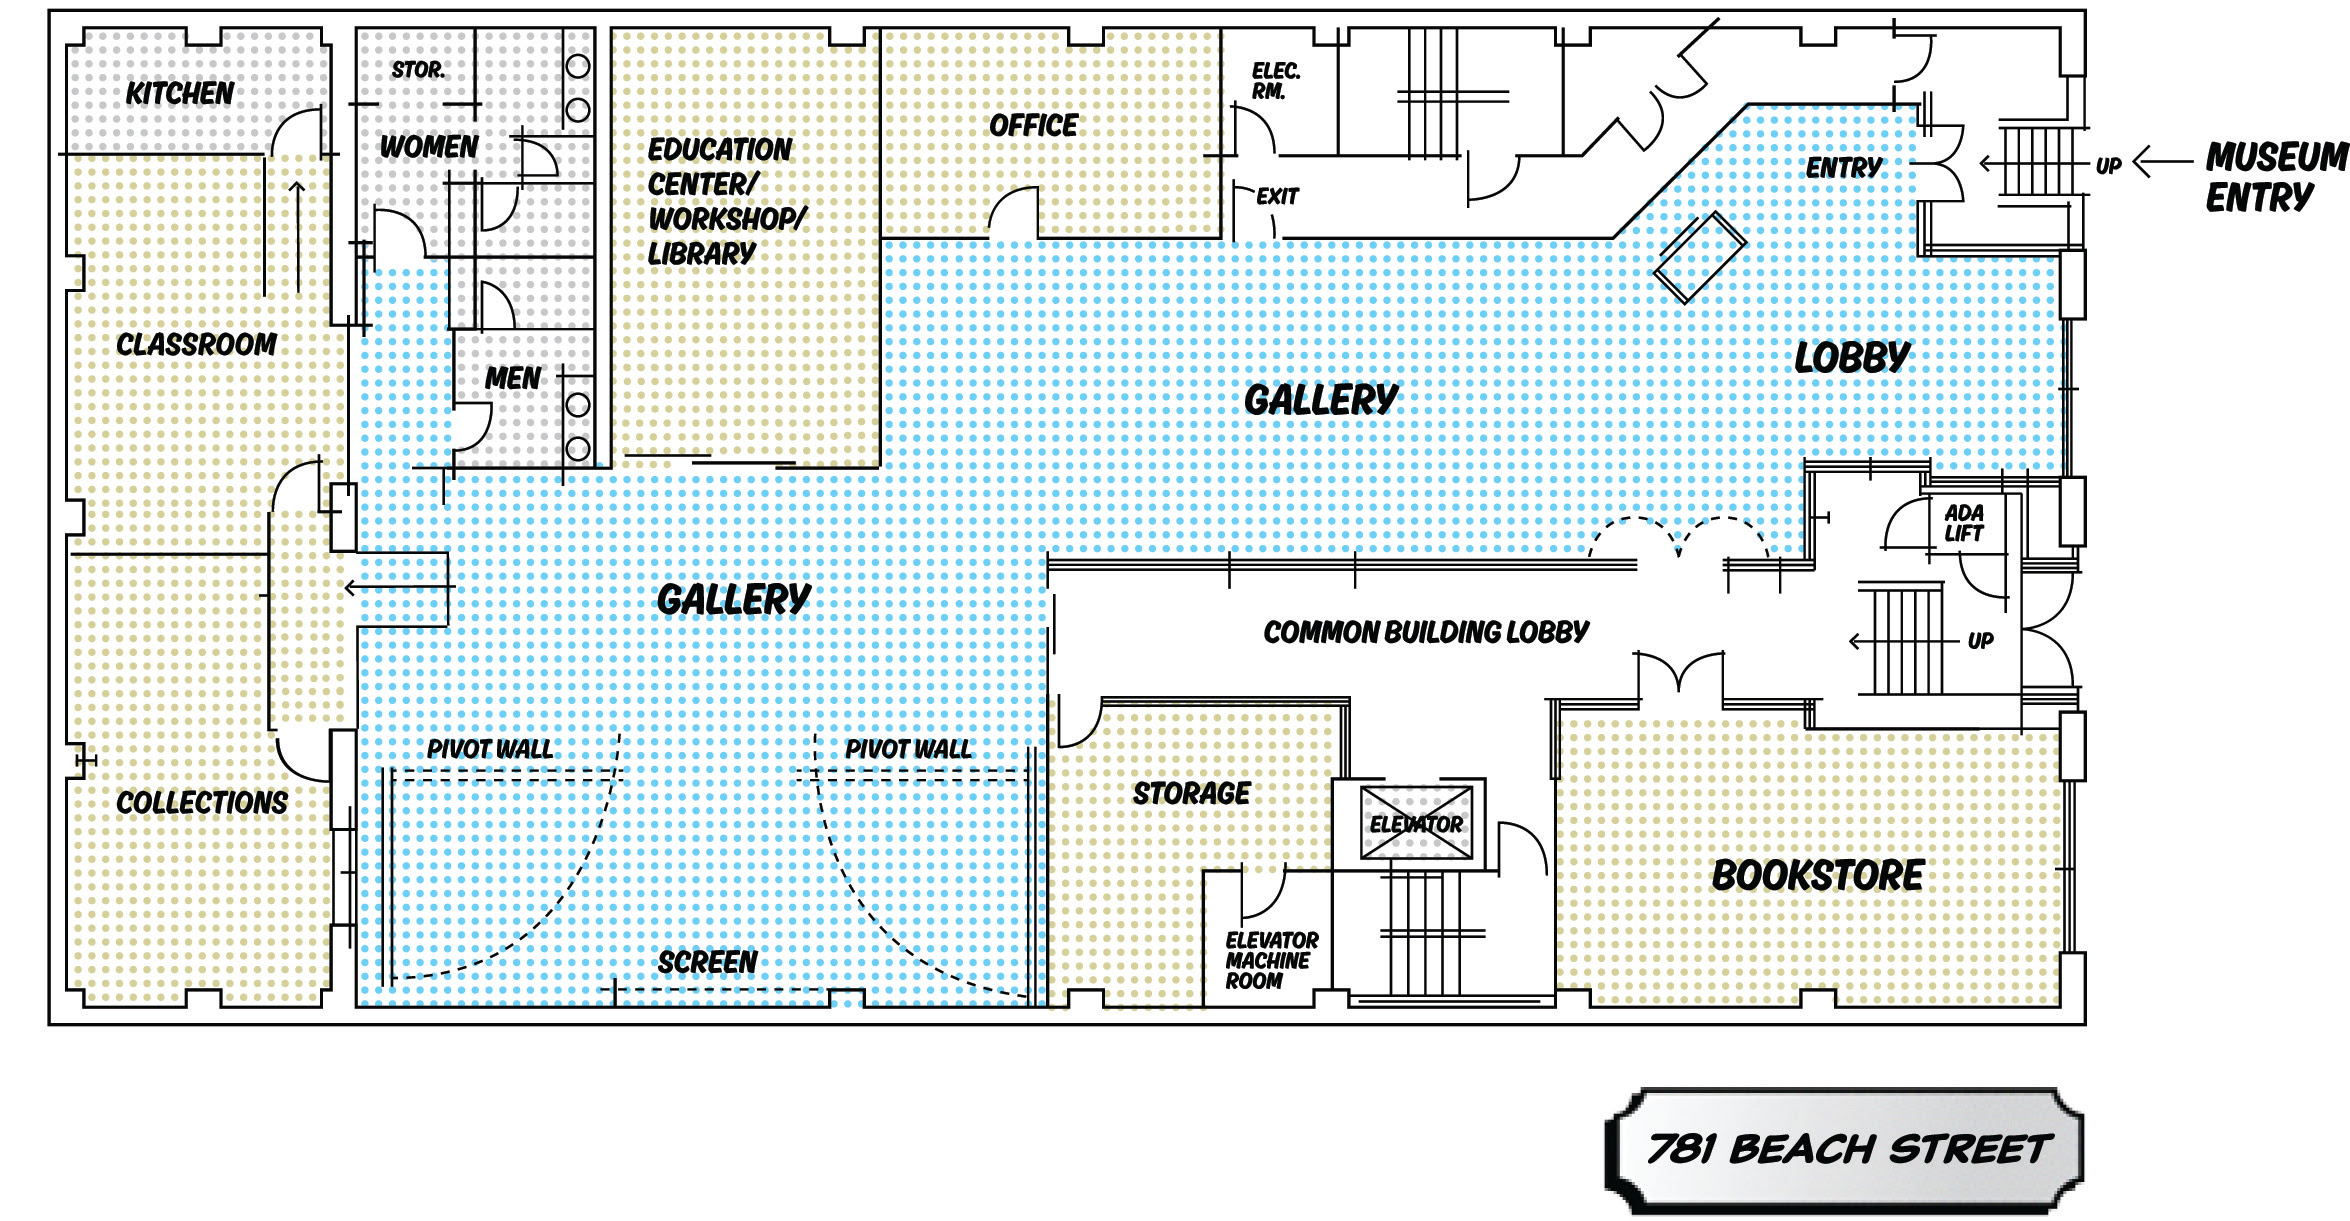 Gallery-floor-plan.jpg